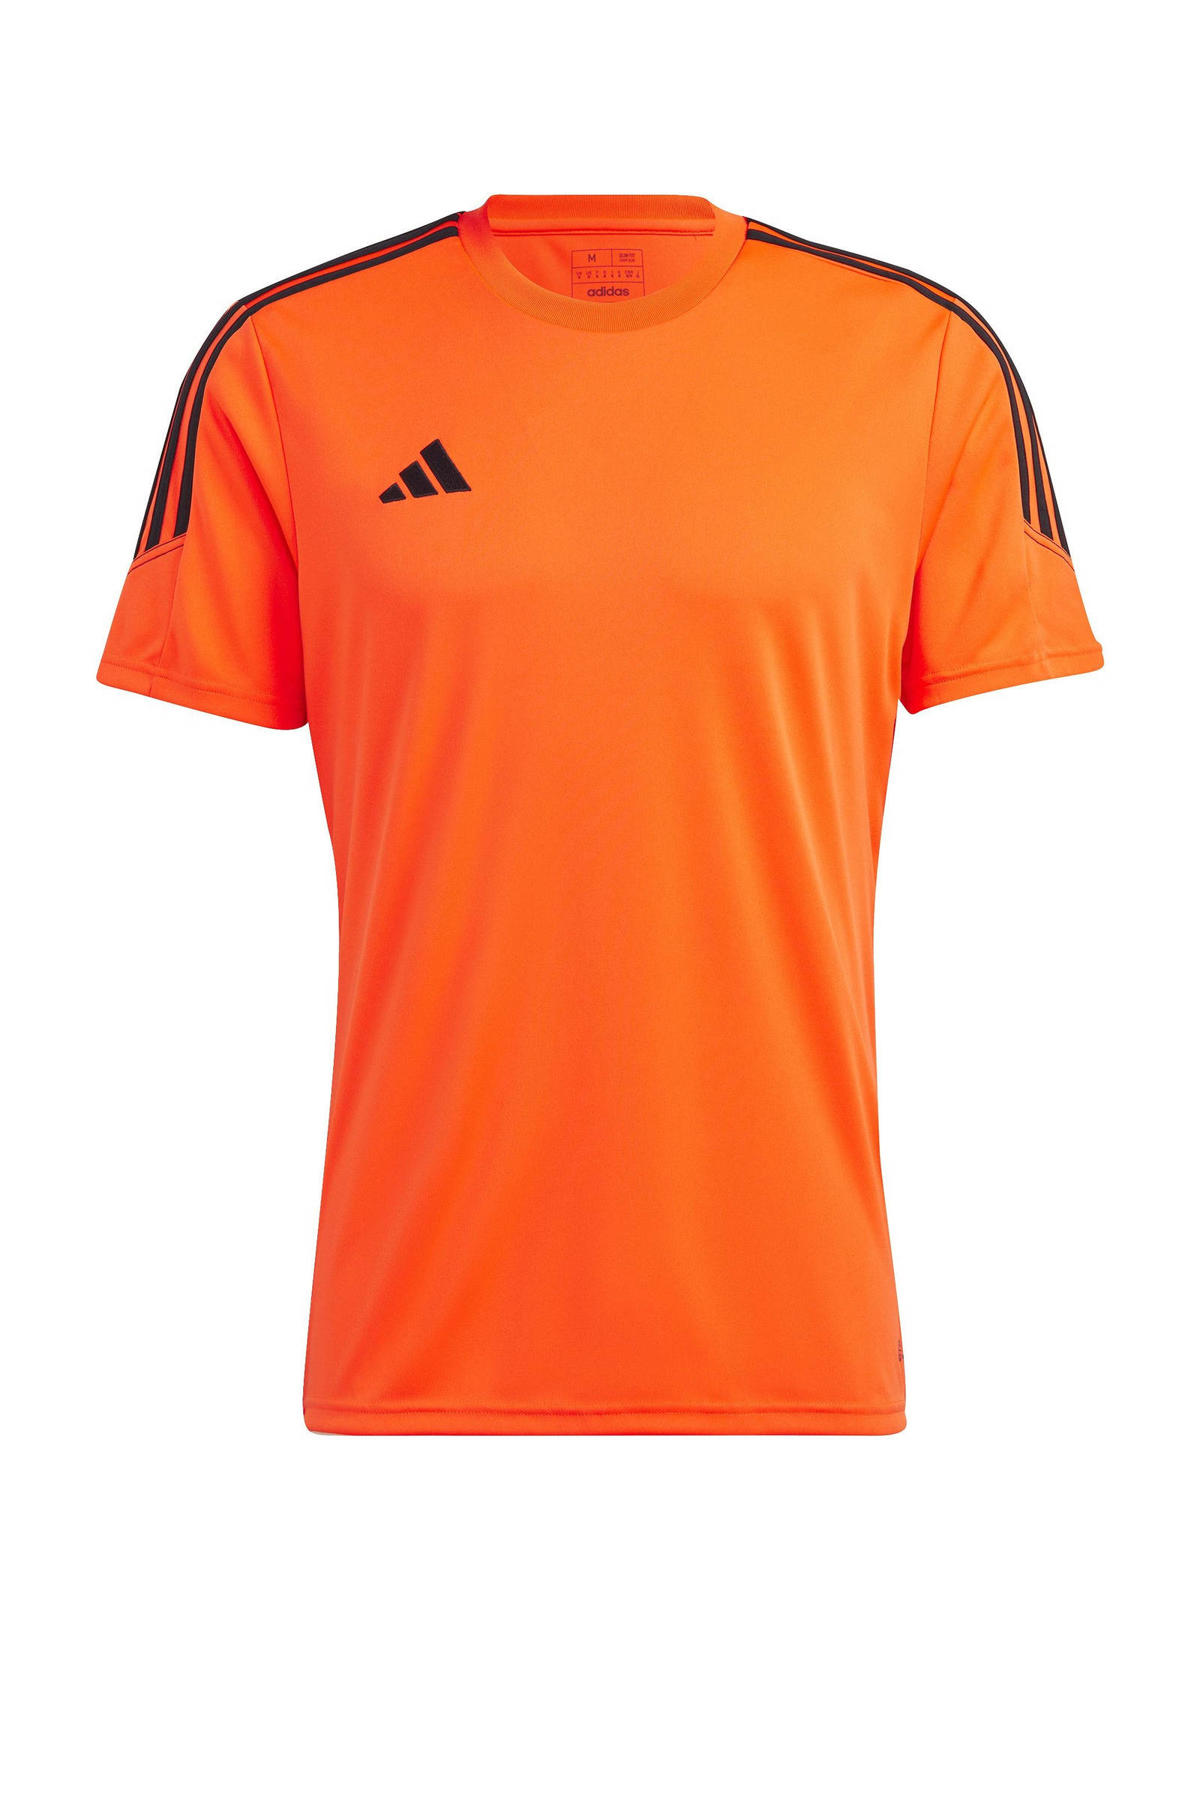 markering Rechtdoor Aanvankelijk adidas Performance sport T-shirt Tiro 23 oranje/zwart | wehkamp